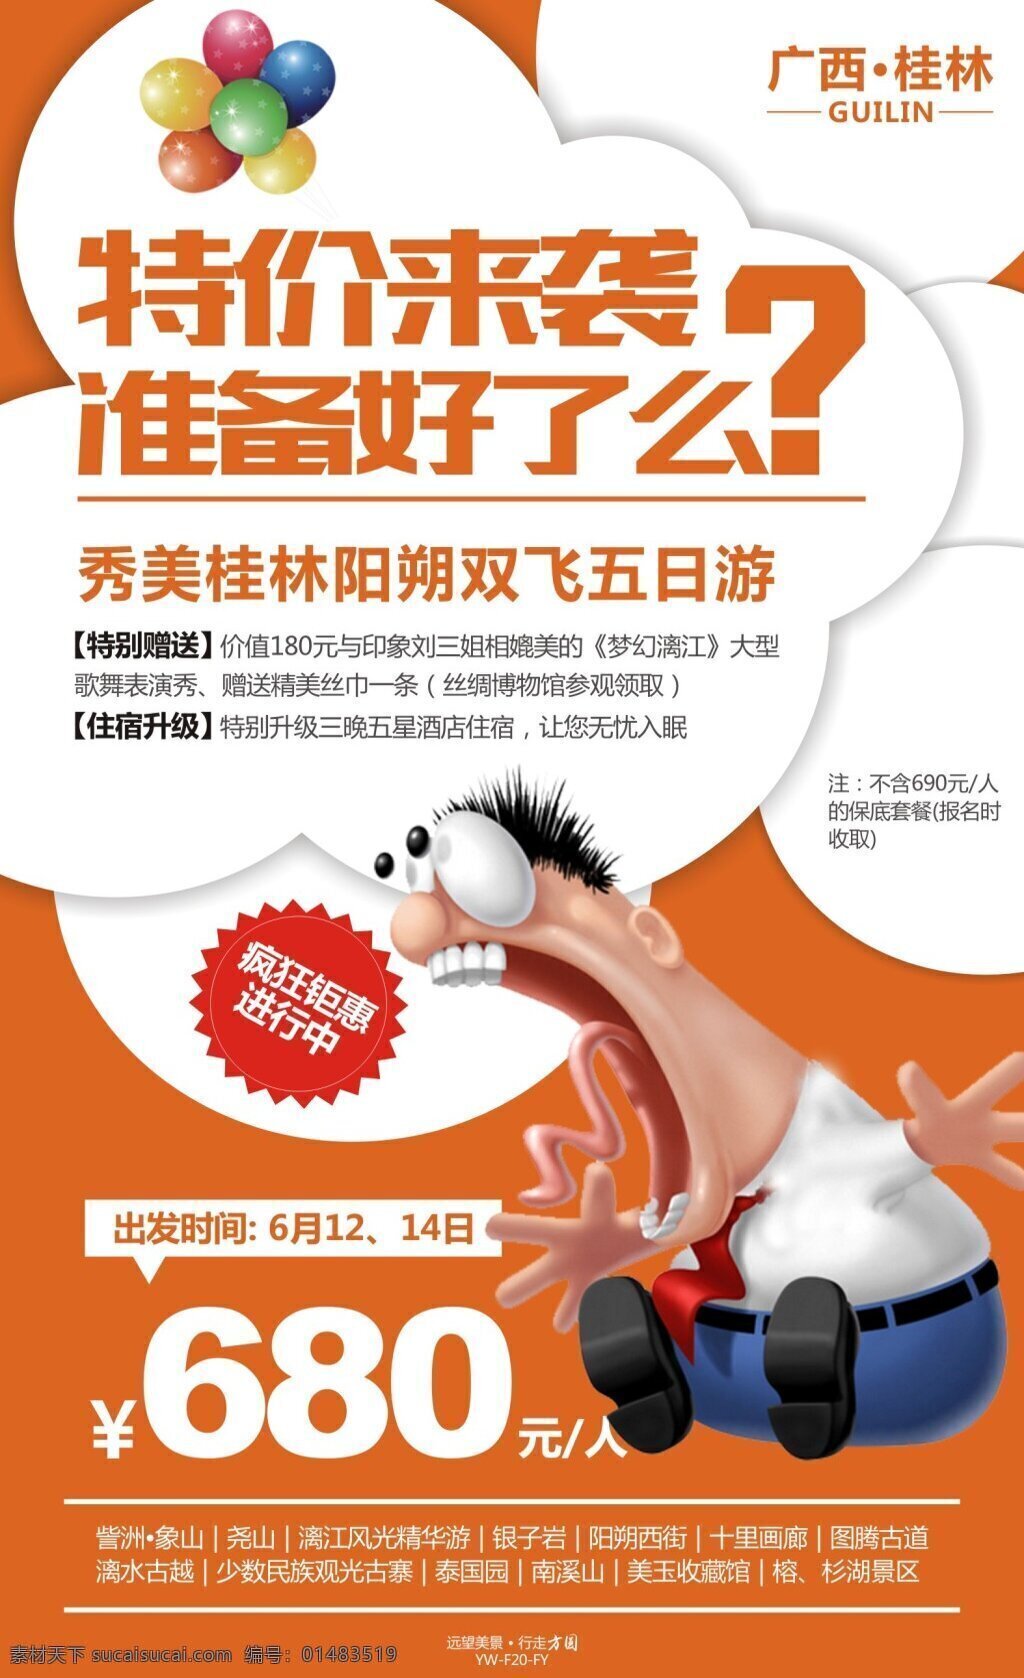 秀美 桂林 特价 旅游 广告 促销 旅游广告 宣传 图 气球